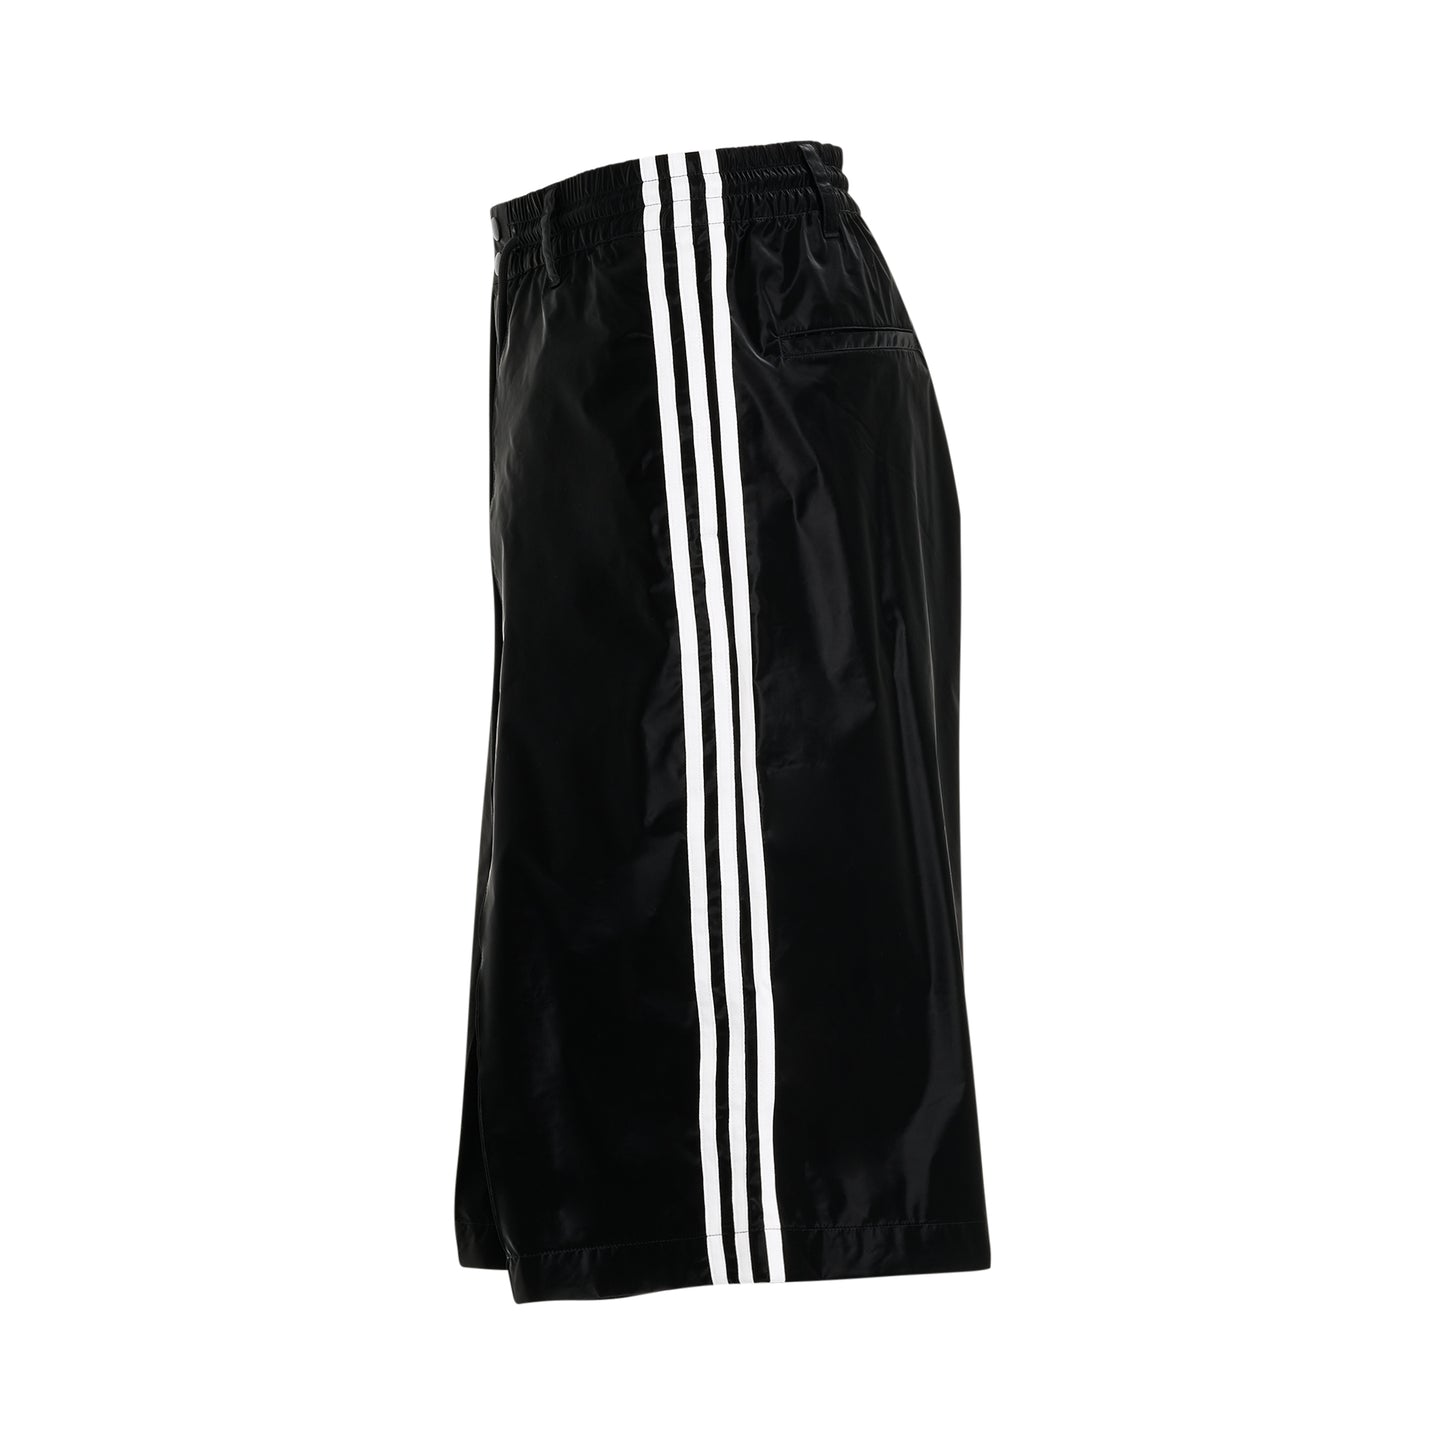 3 Stripe Shorts in Black